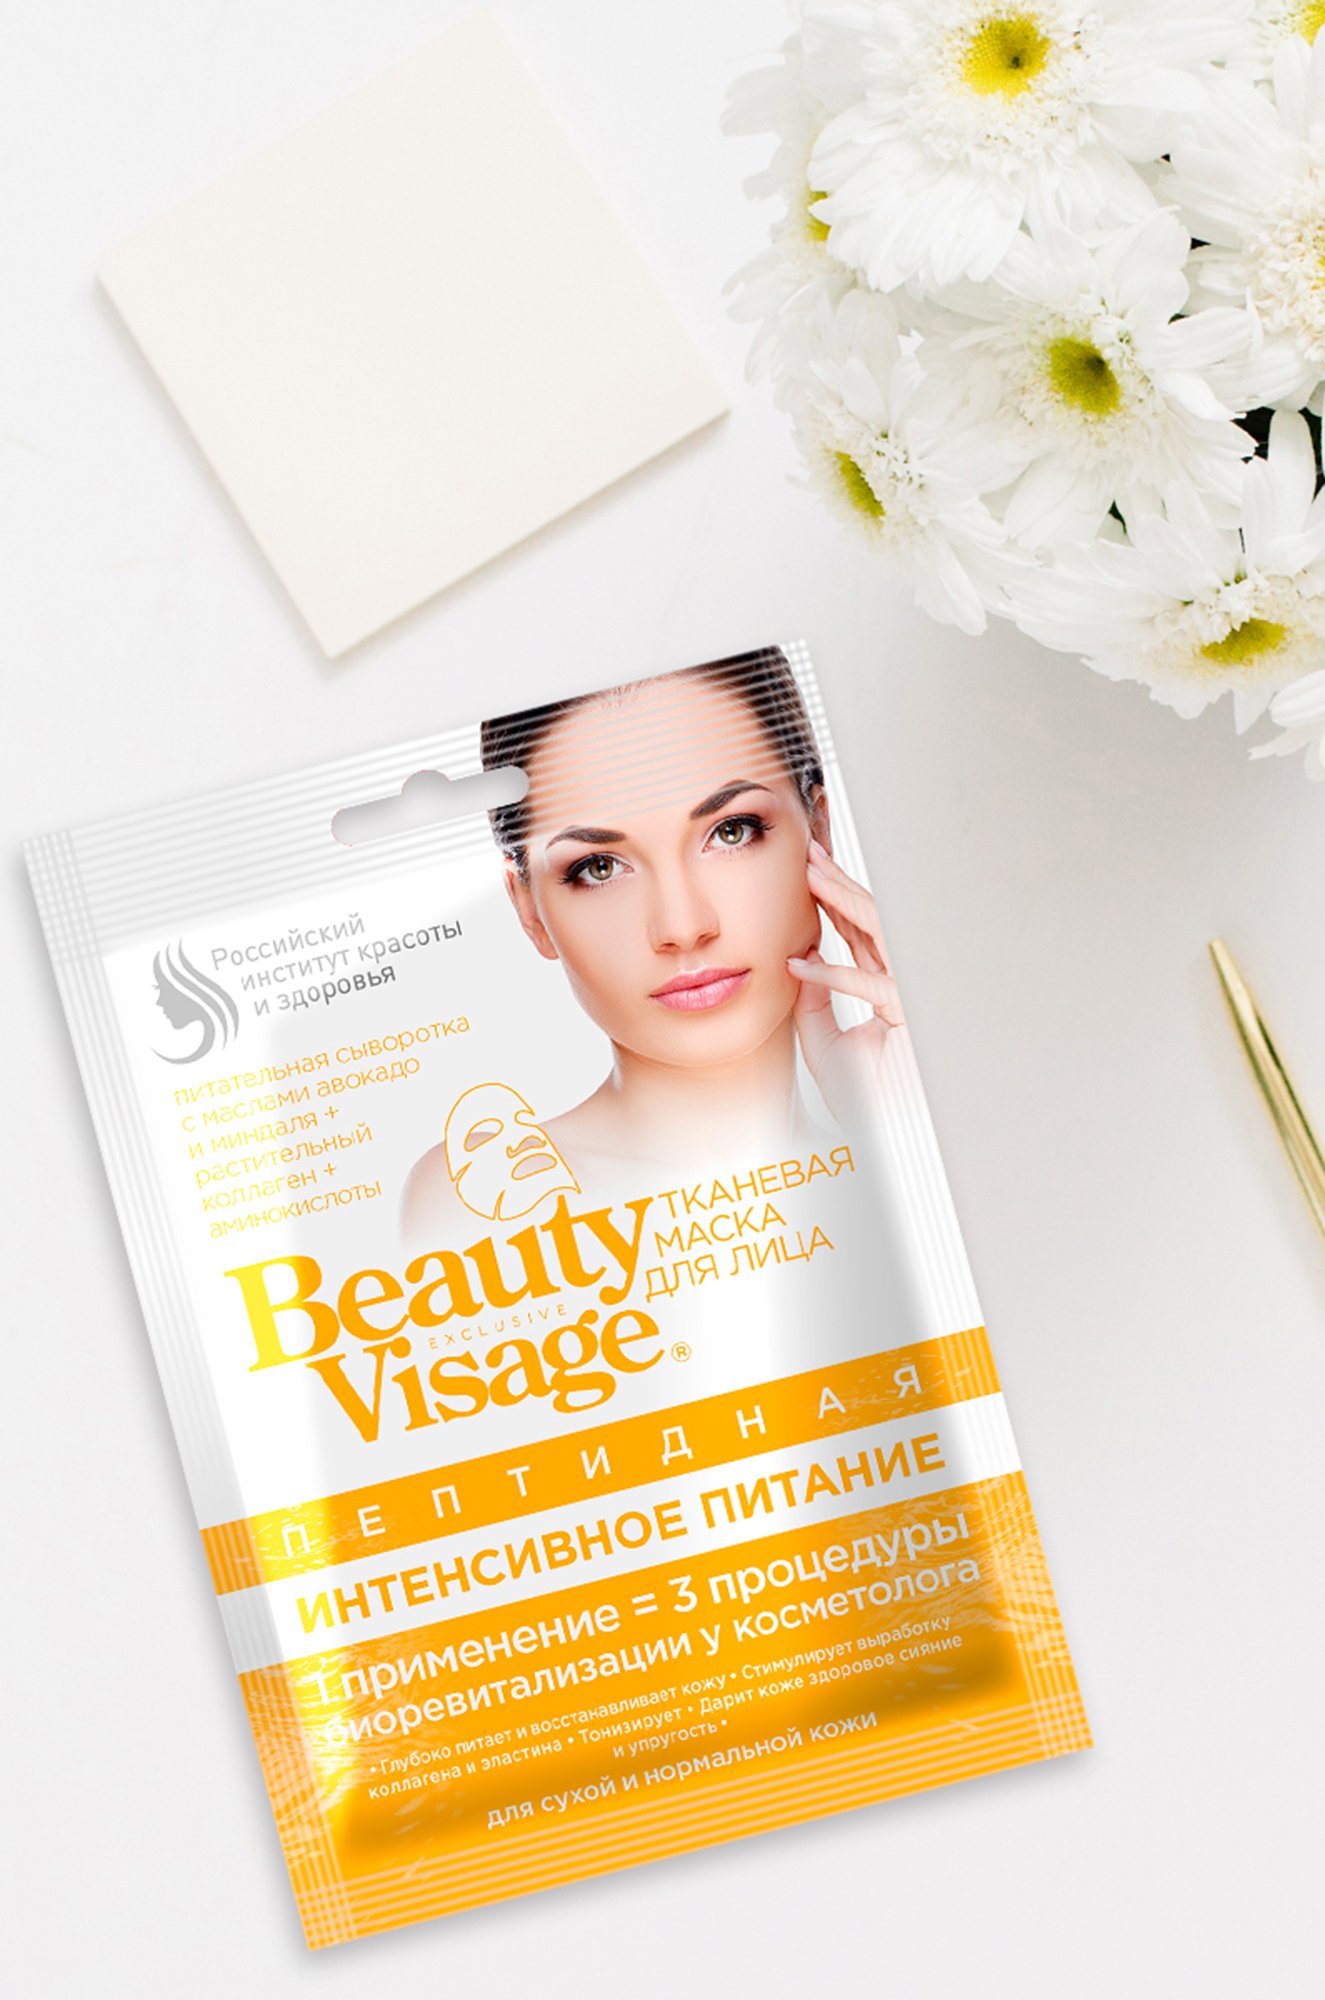 Маска для лица тканевая BeautyVisage пептидная интенсивное питание 25 мл Fito косметик